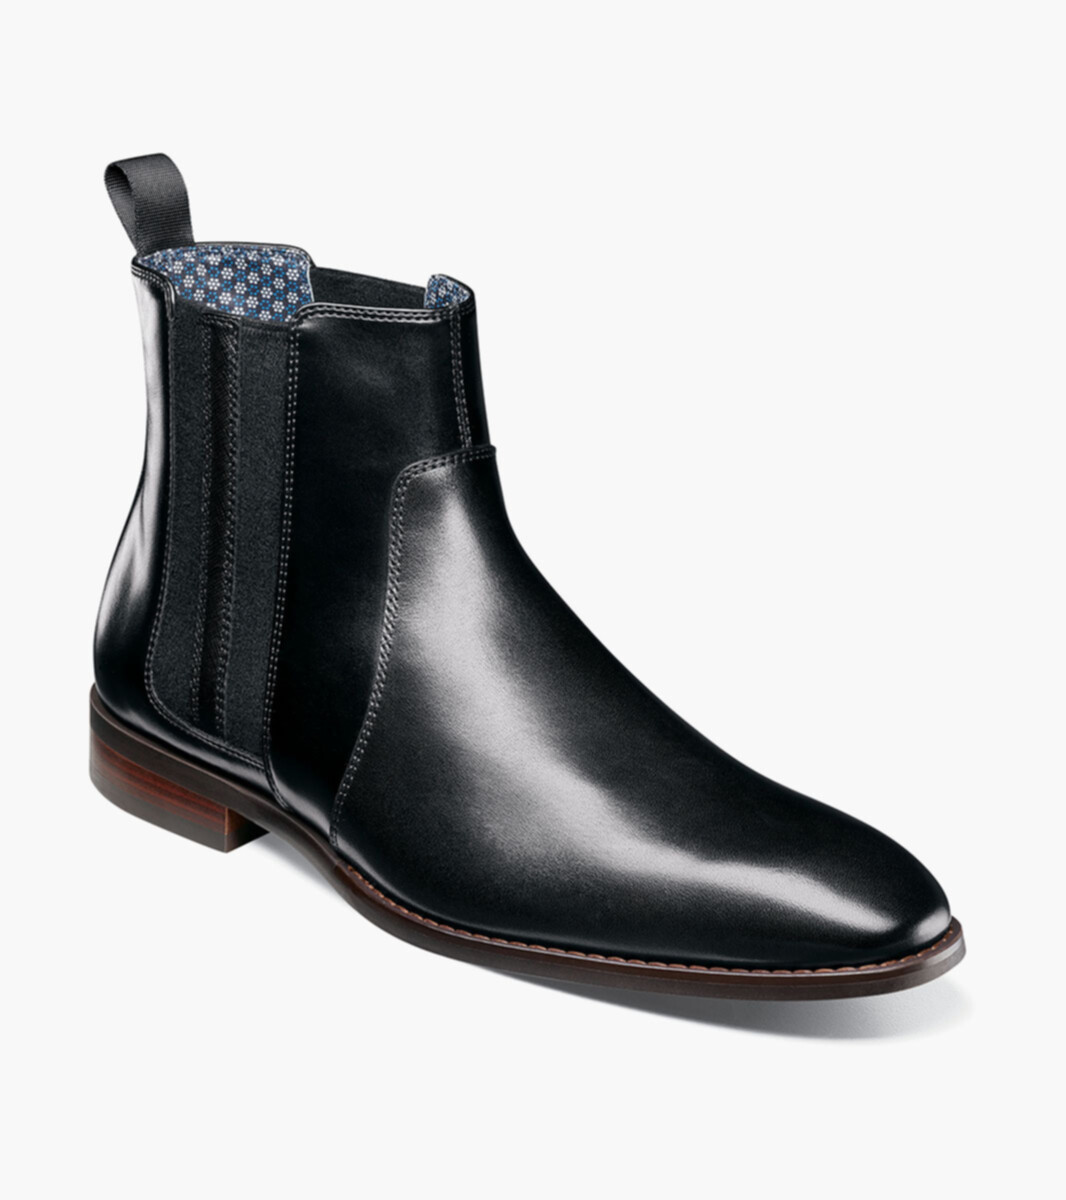 Shop Louis Vuitton Men's Chelsea Boots